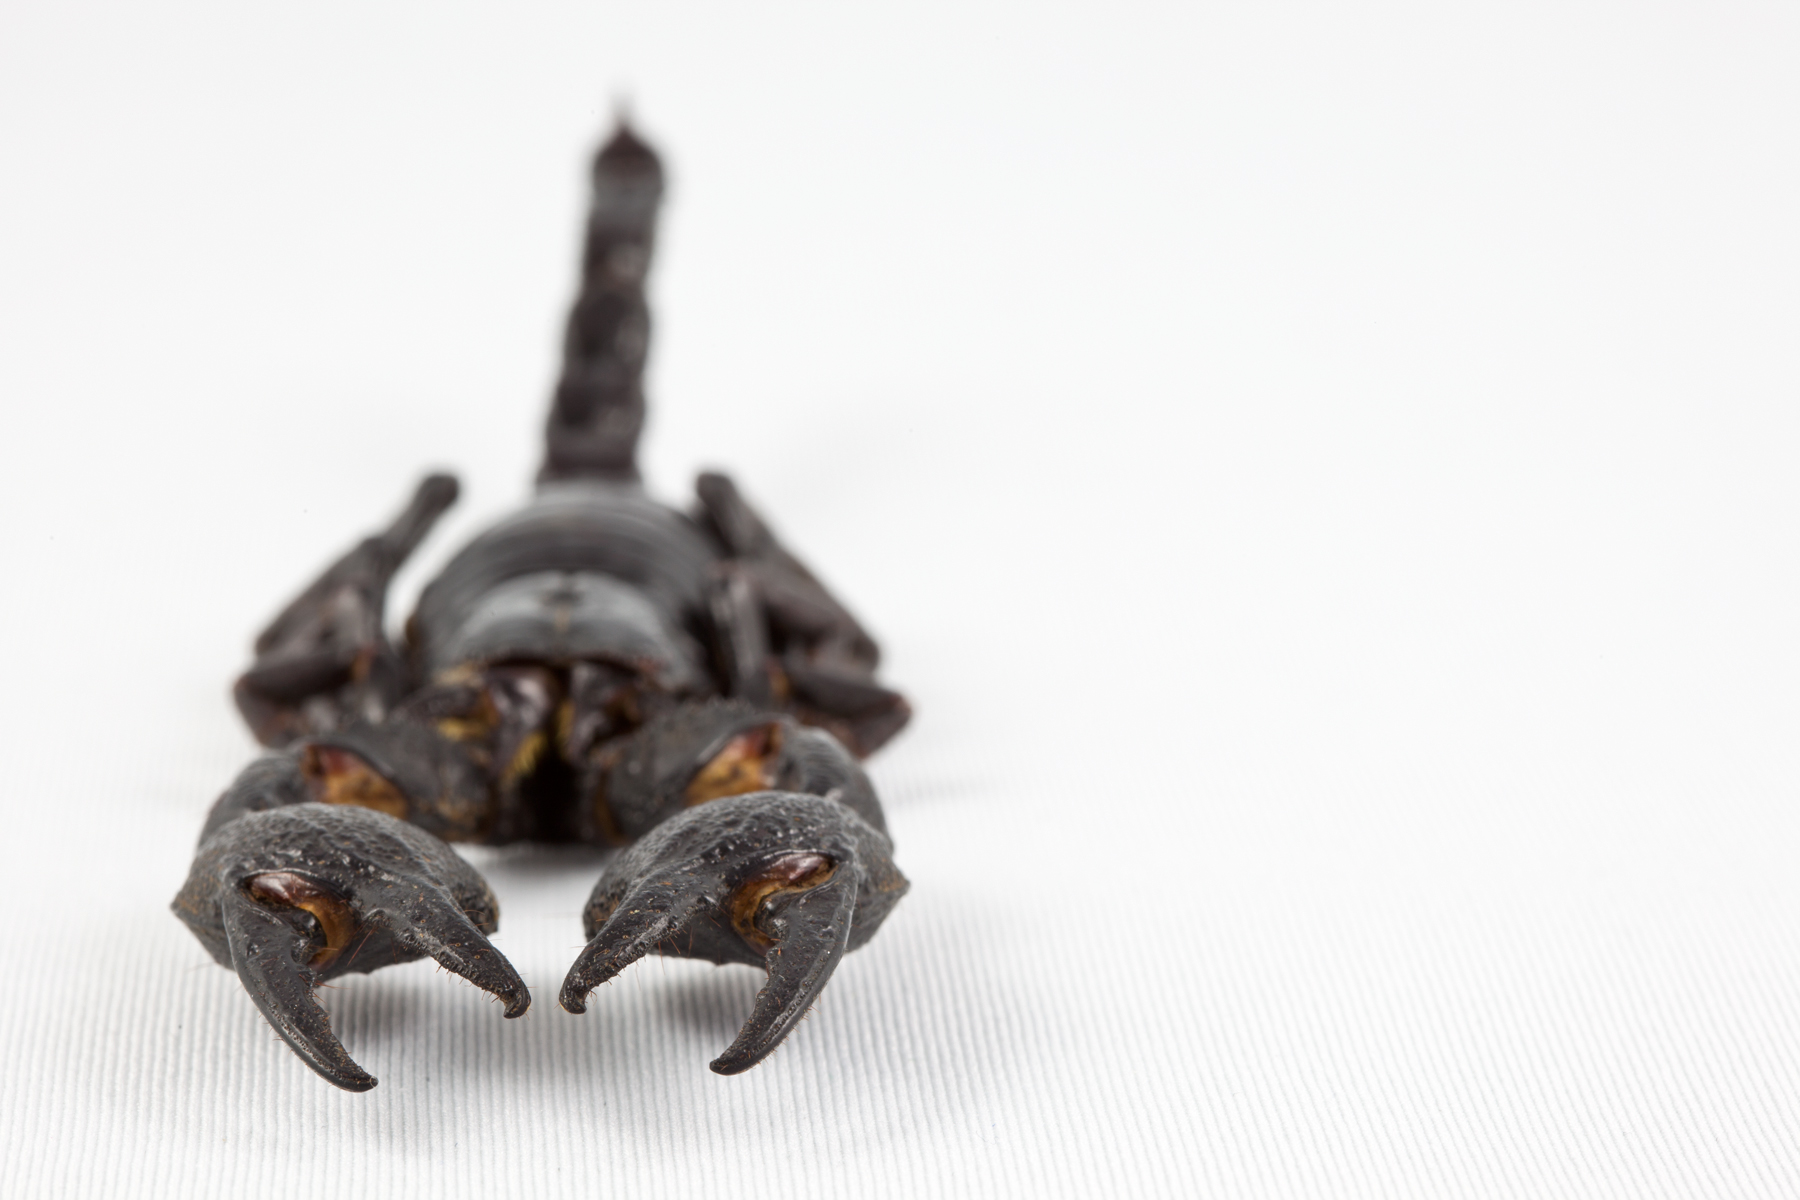 Black scorpion close-up photo